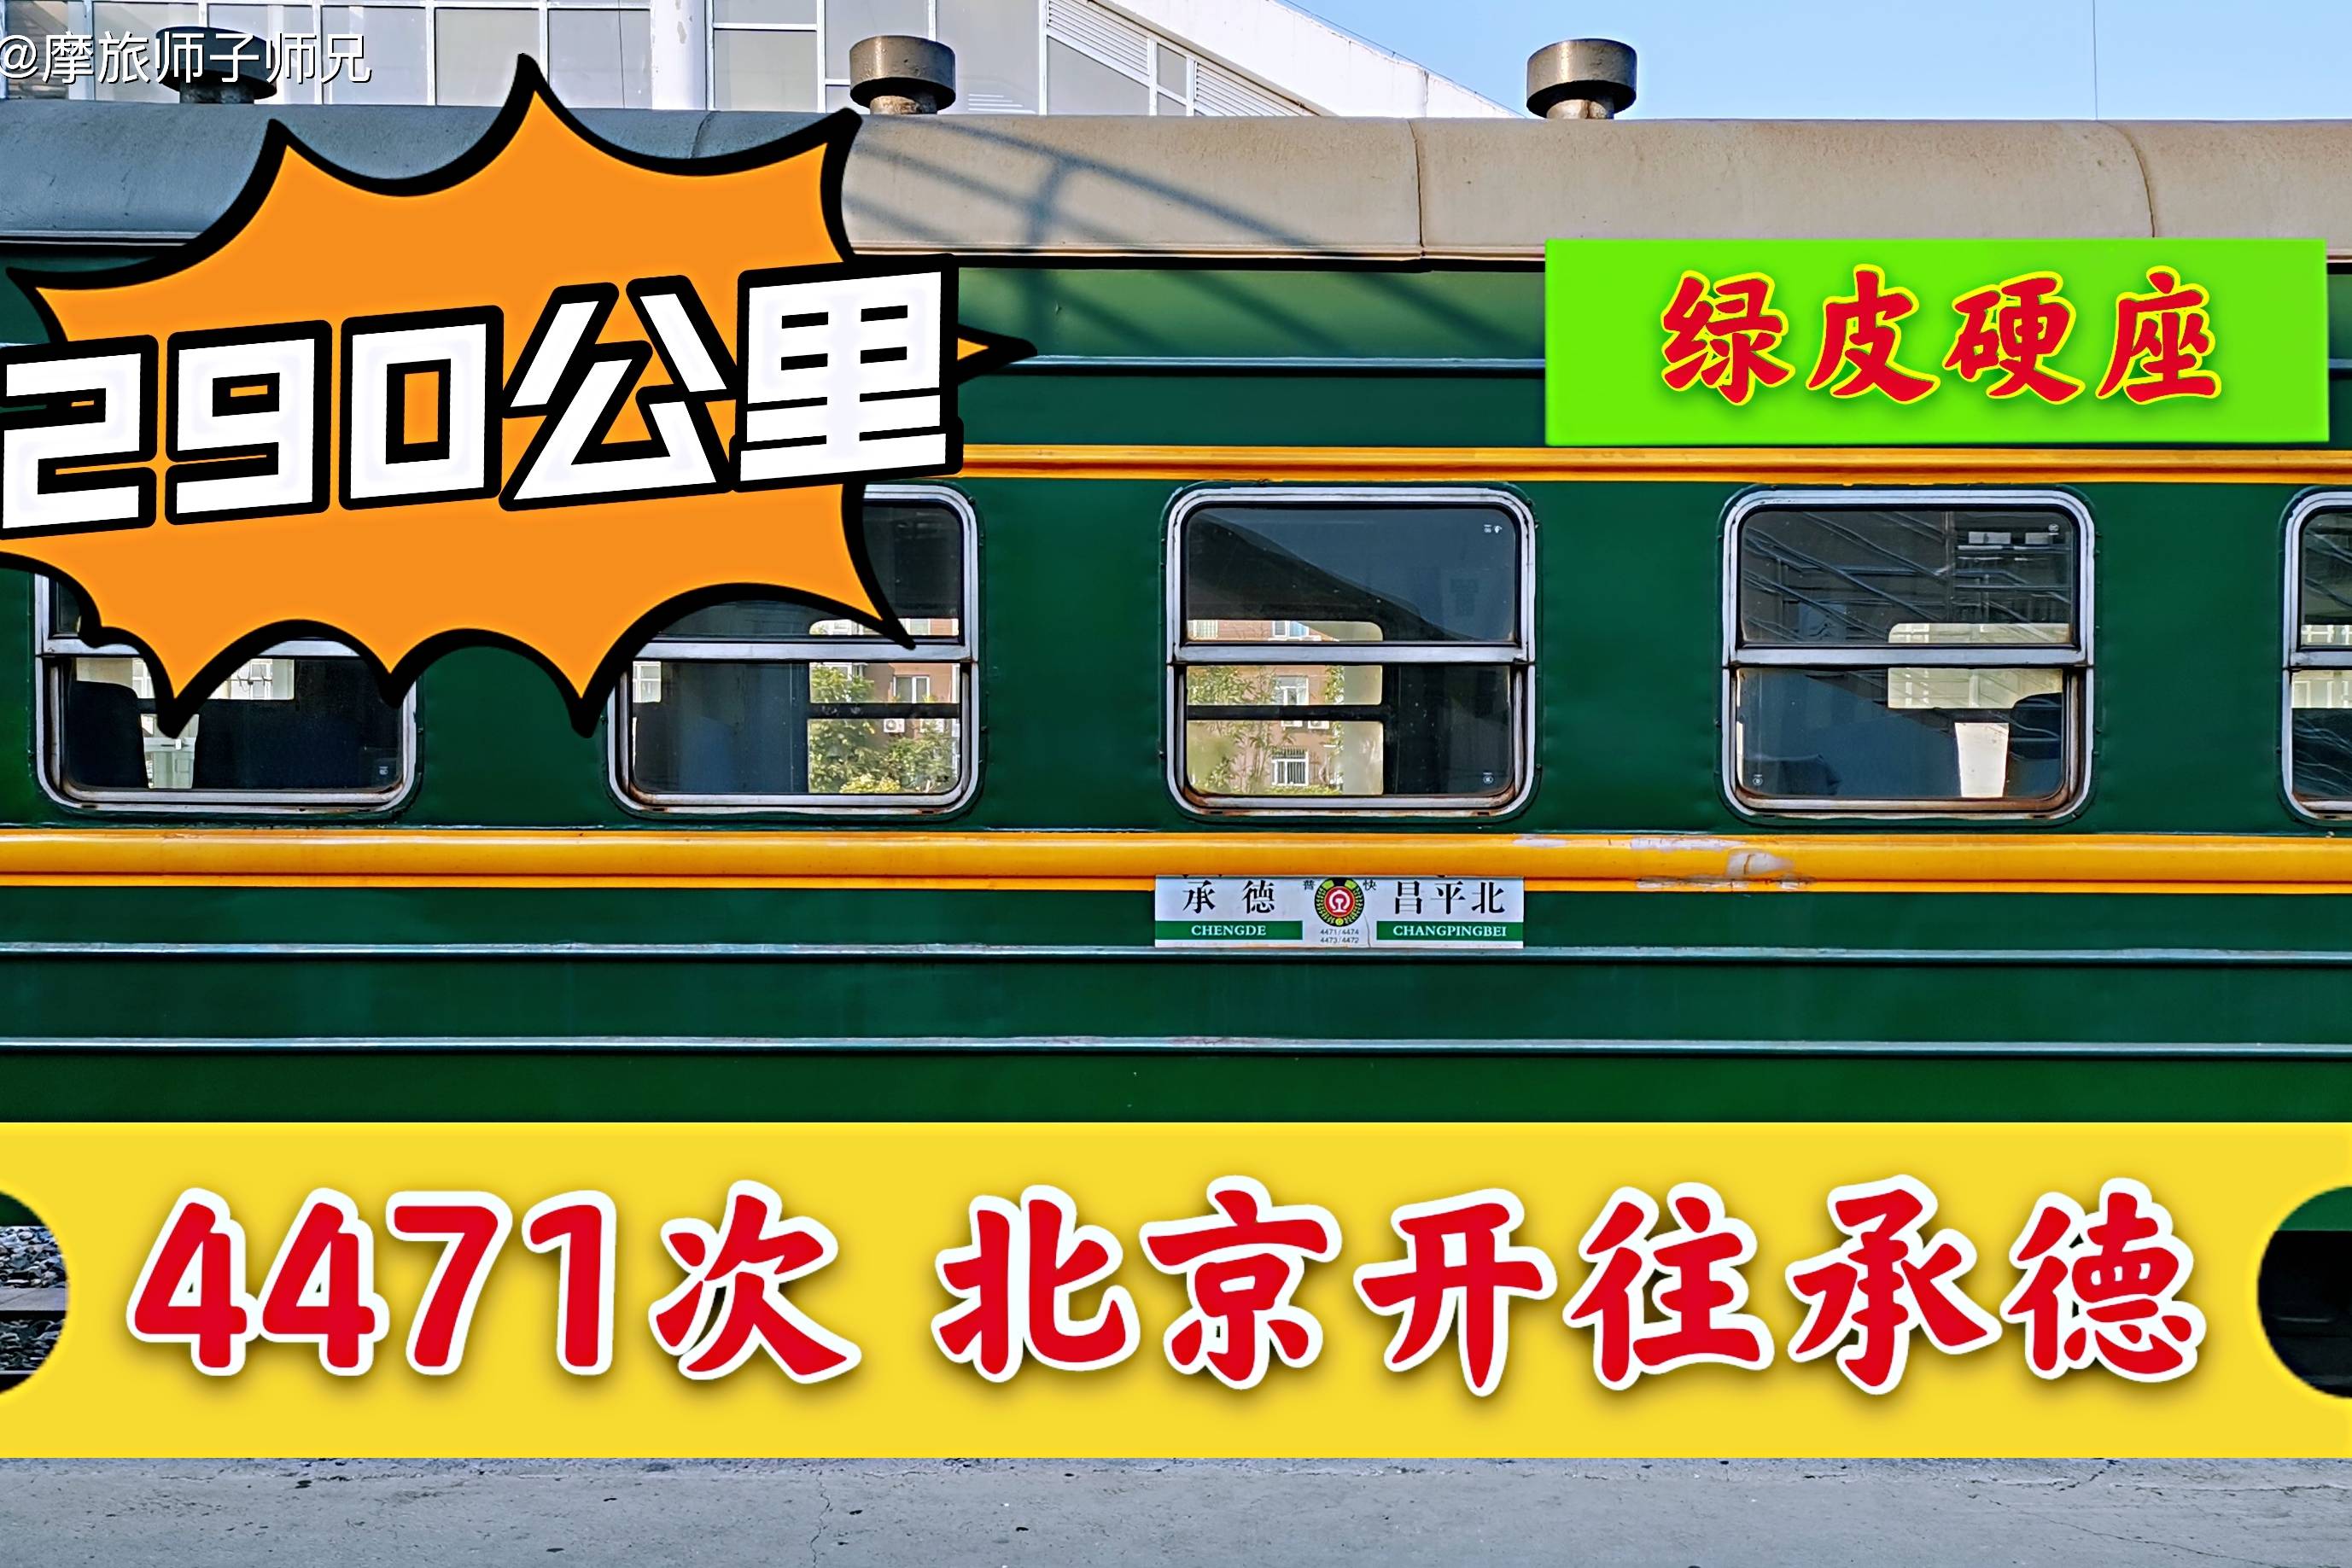 绿皮火车北京开往承德4471次列车290公里运行9小时